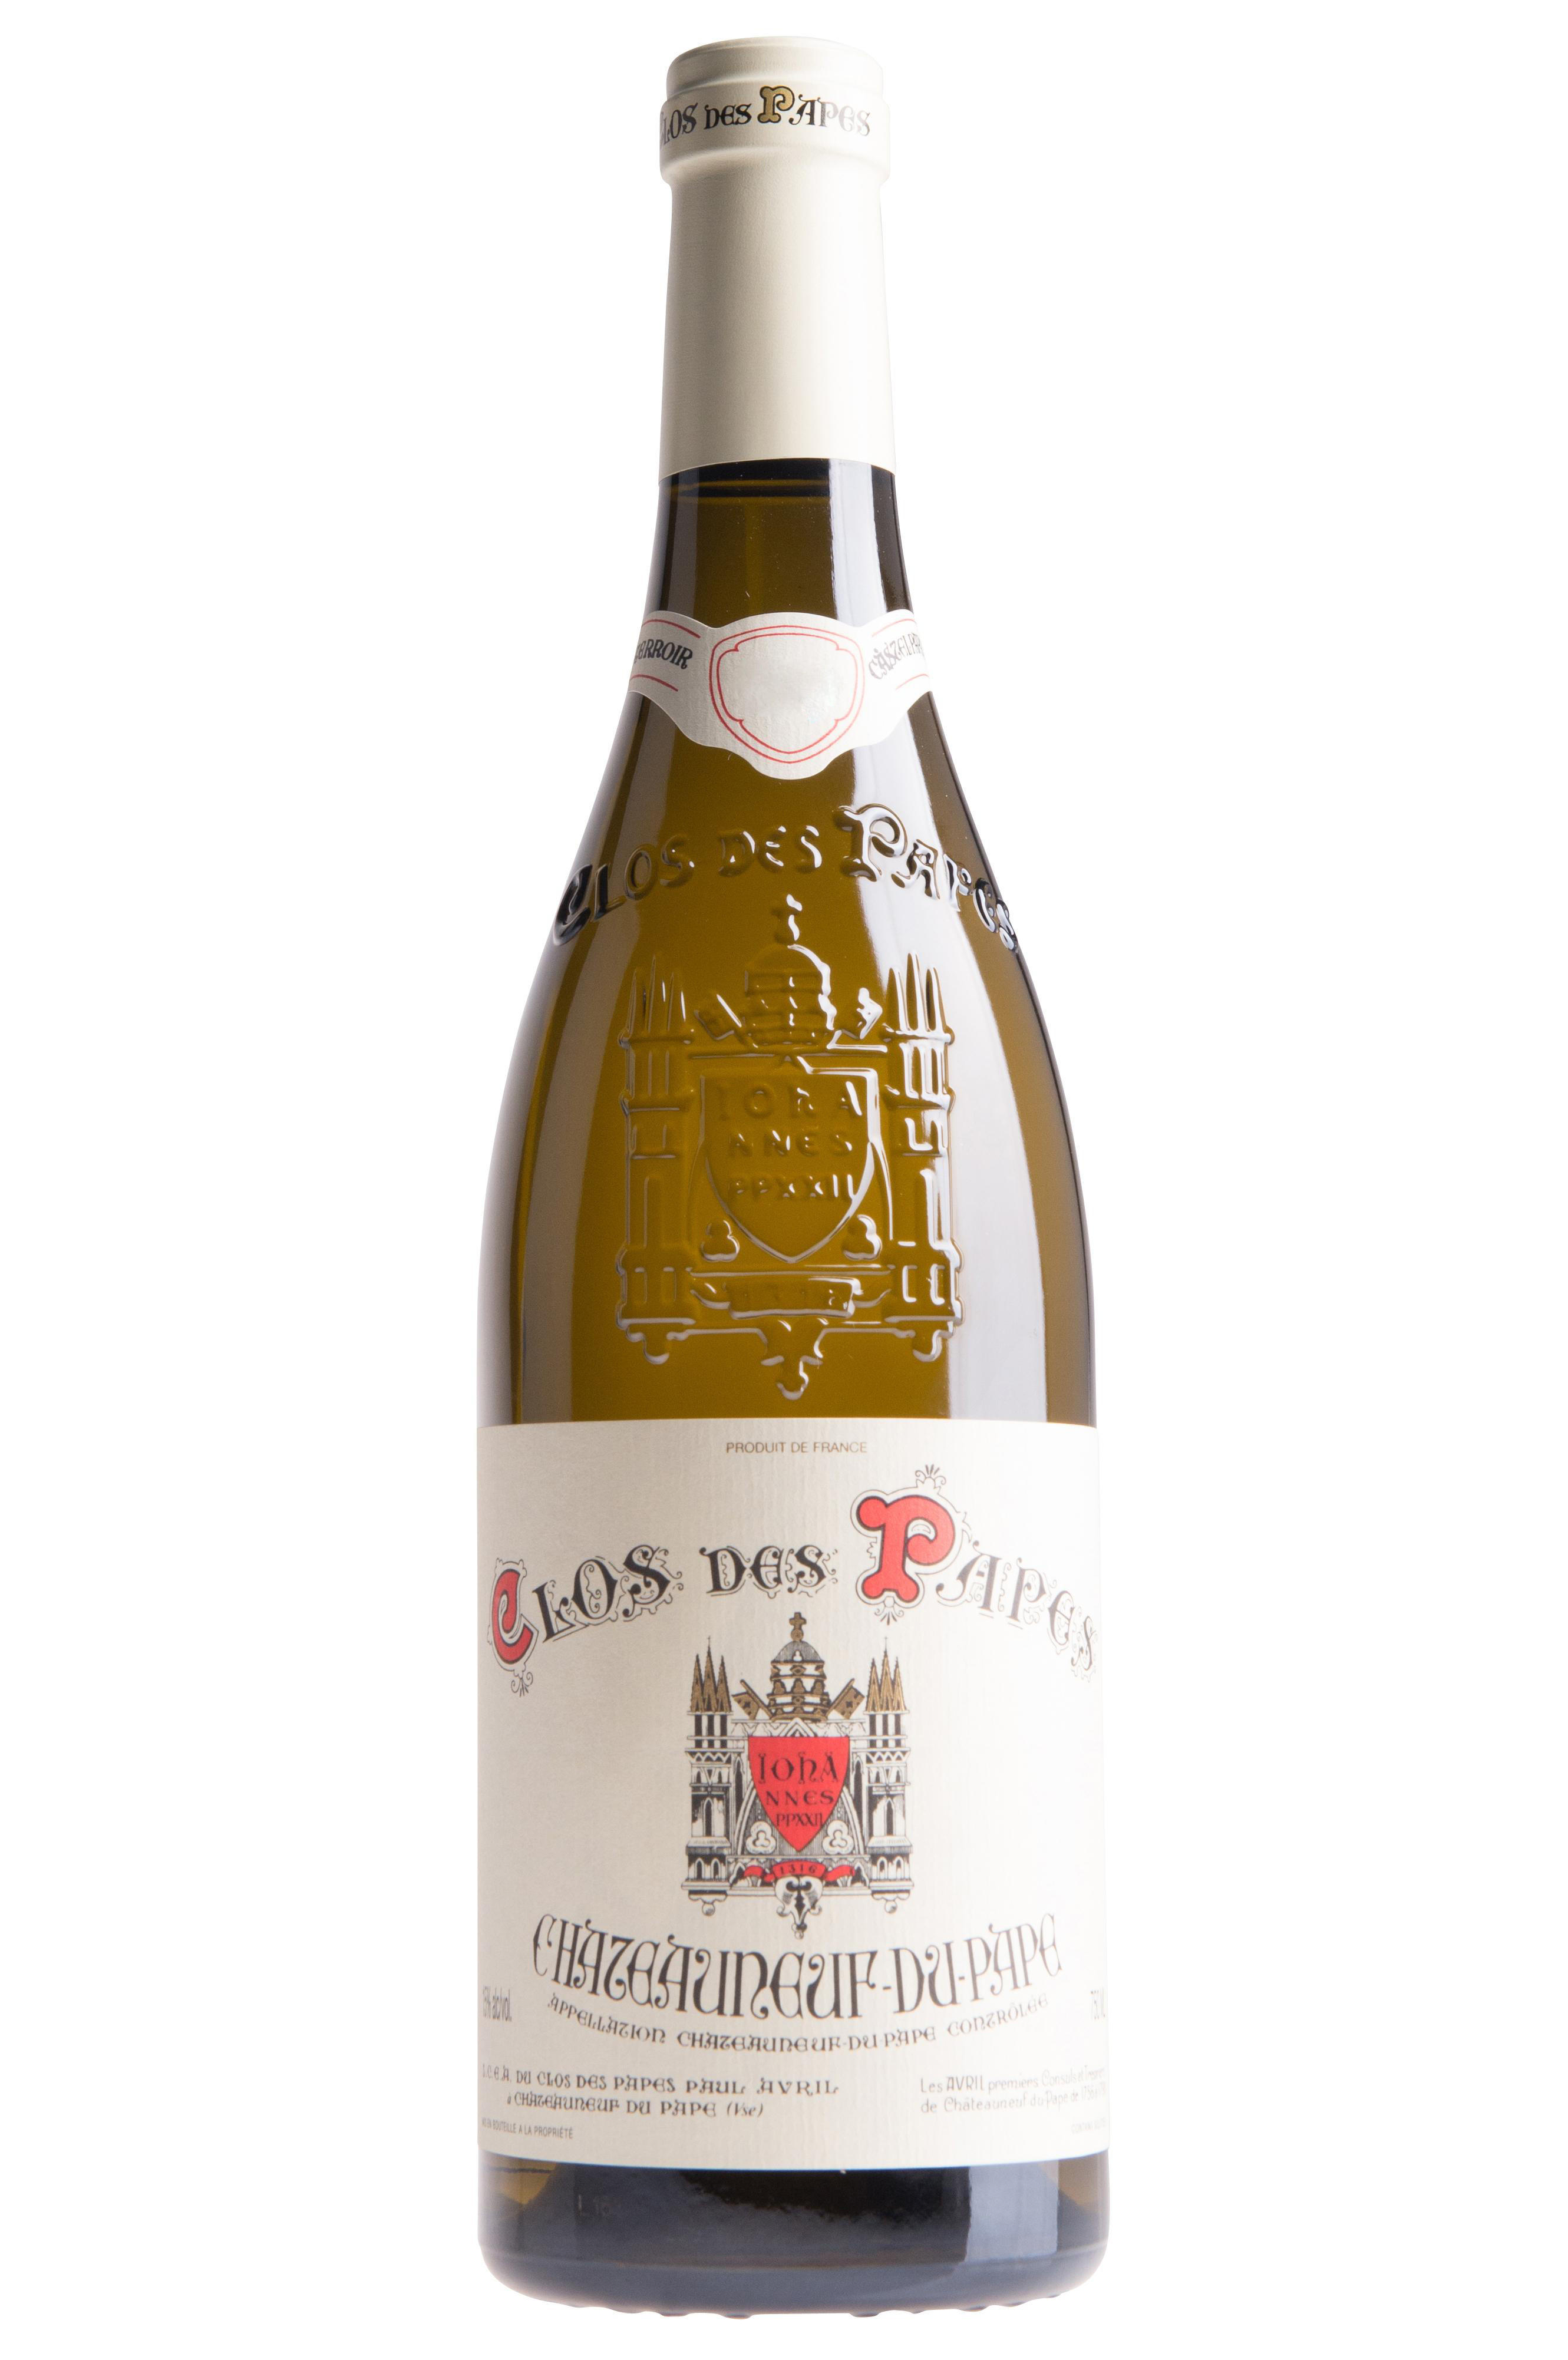 Buy 11 Chateauneuf Du Pape Blanc Clos Des Papes Paul Avril Et Fils Wine Berry Bros Rudd